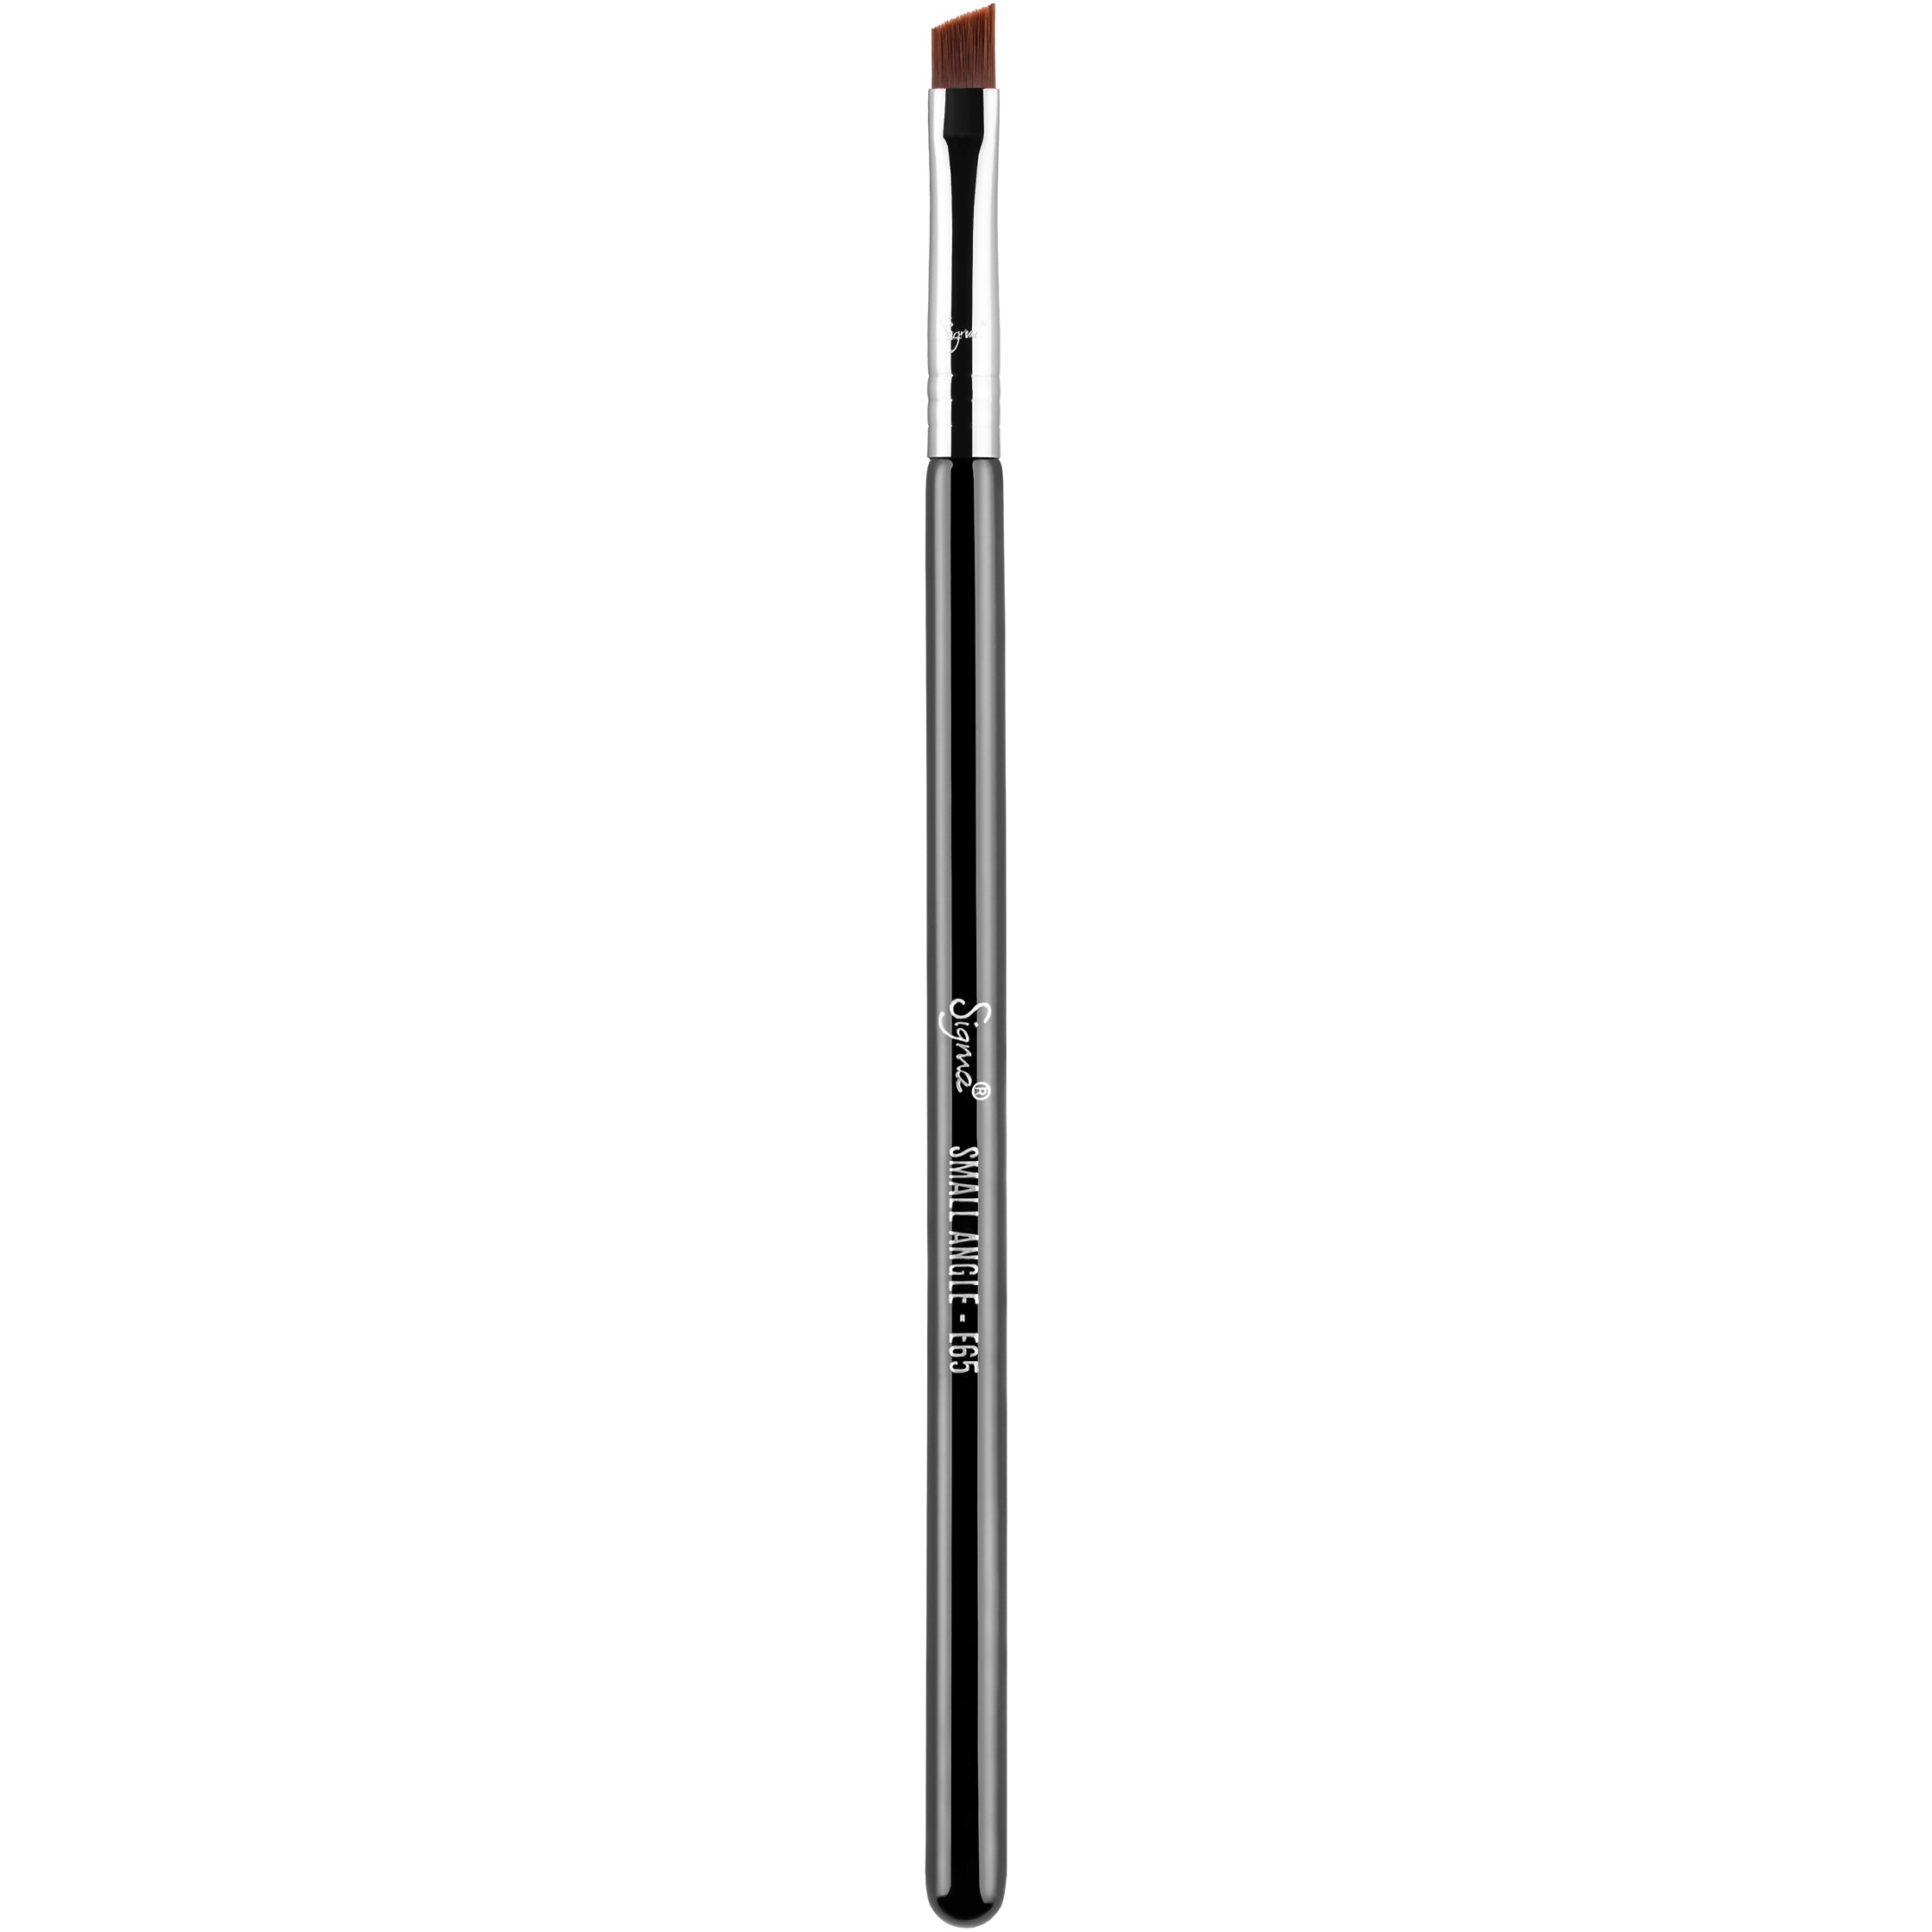 Bilde av Sigma Beauty Brushes E65 - Small Angle Brush